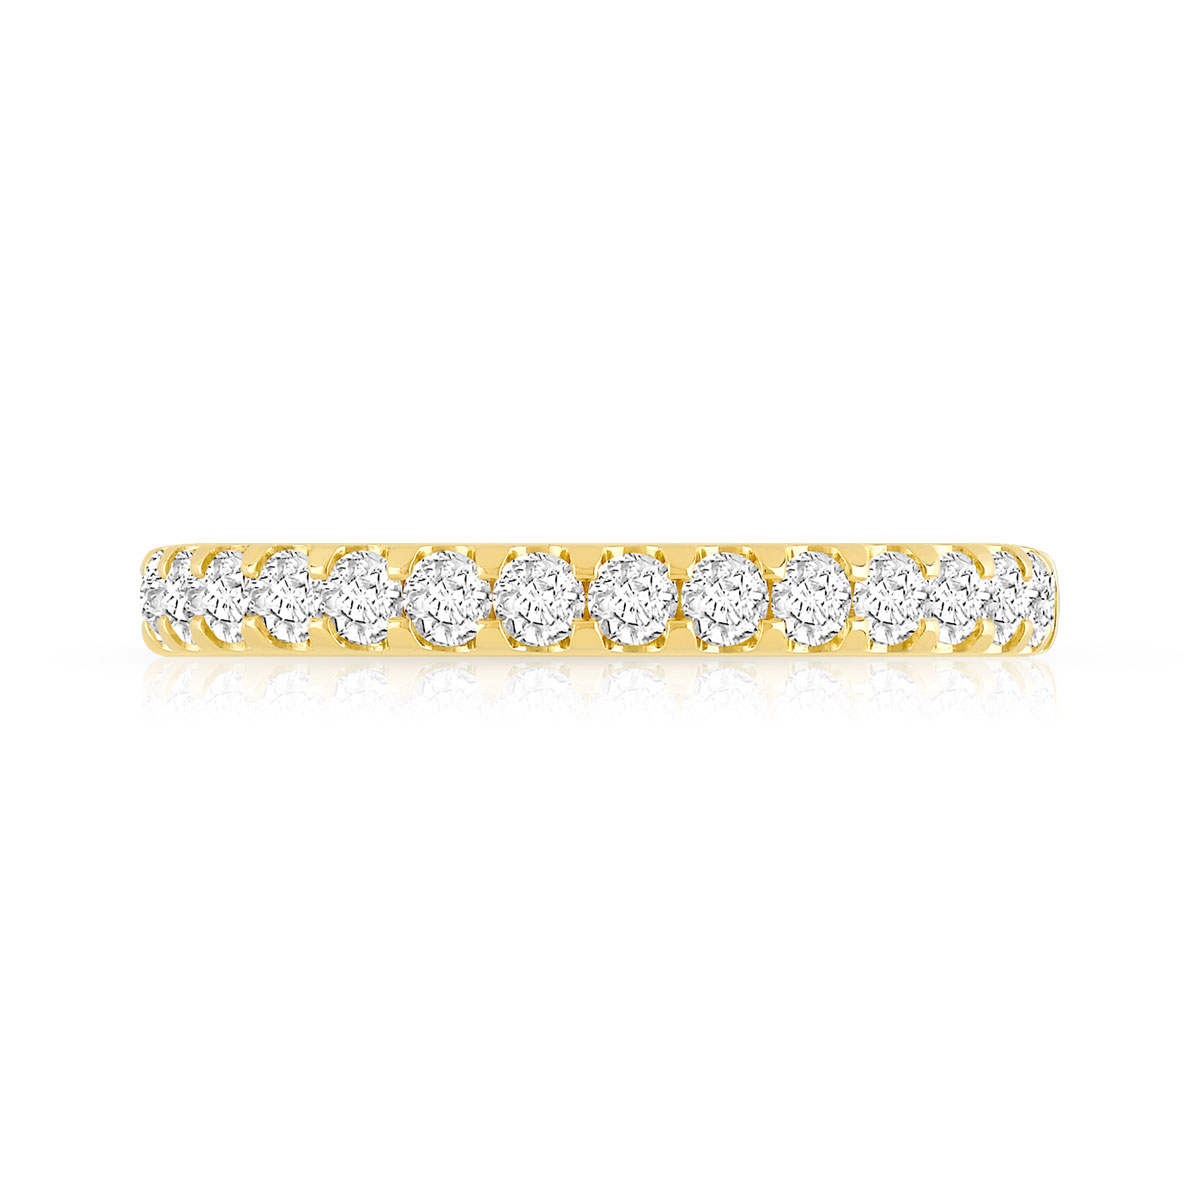 Alliance demi-tour or 750 jaune diamants synthétiques 0.50 carat - vue 3